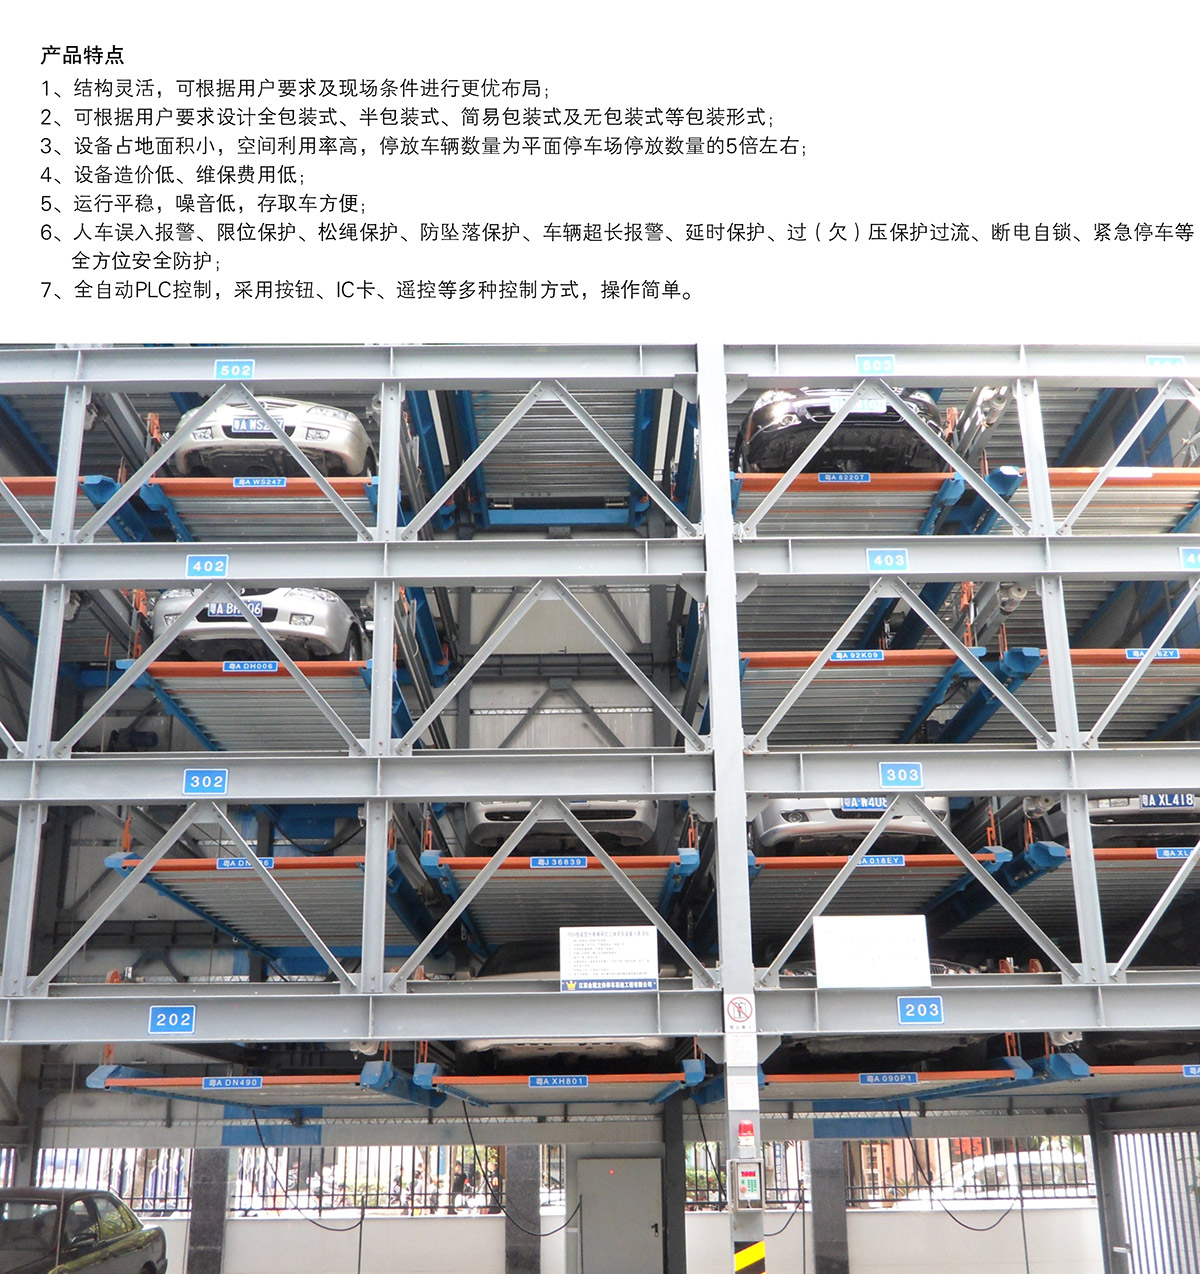 负一正三地坑PSH4D1四层升降横移机械停车设备产品特点.jpg